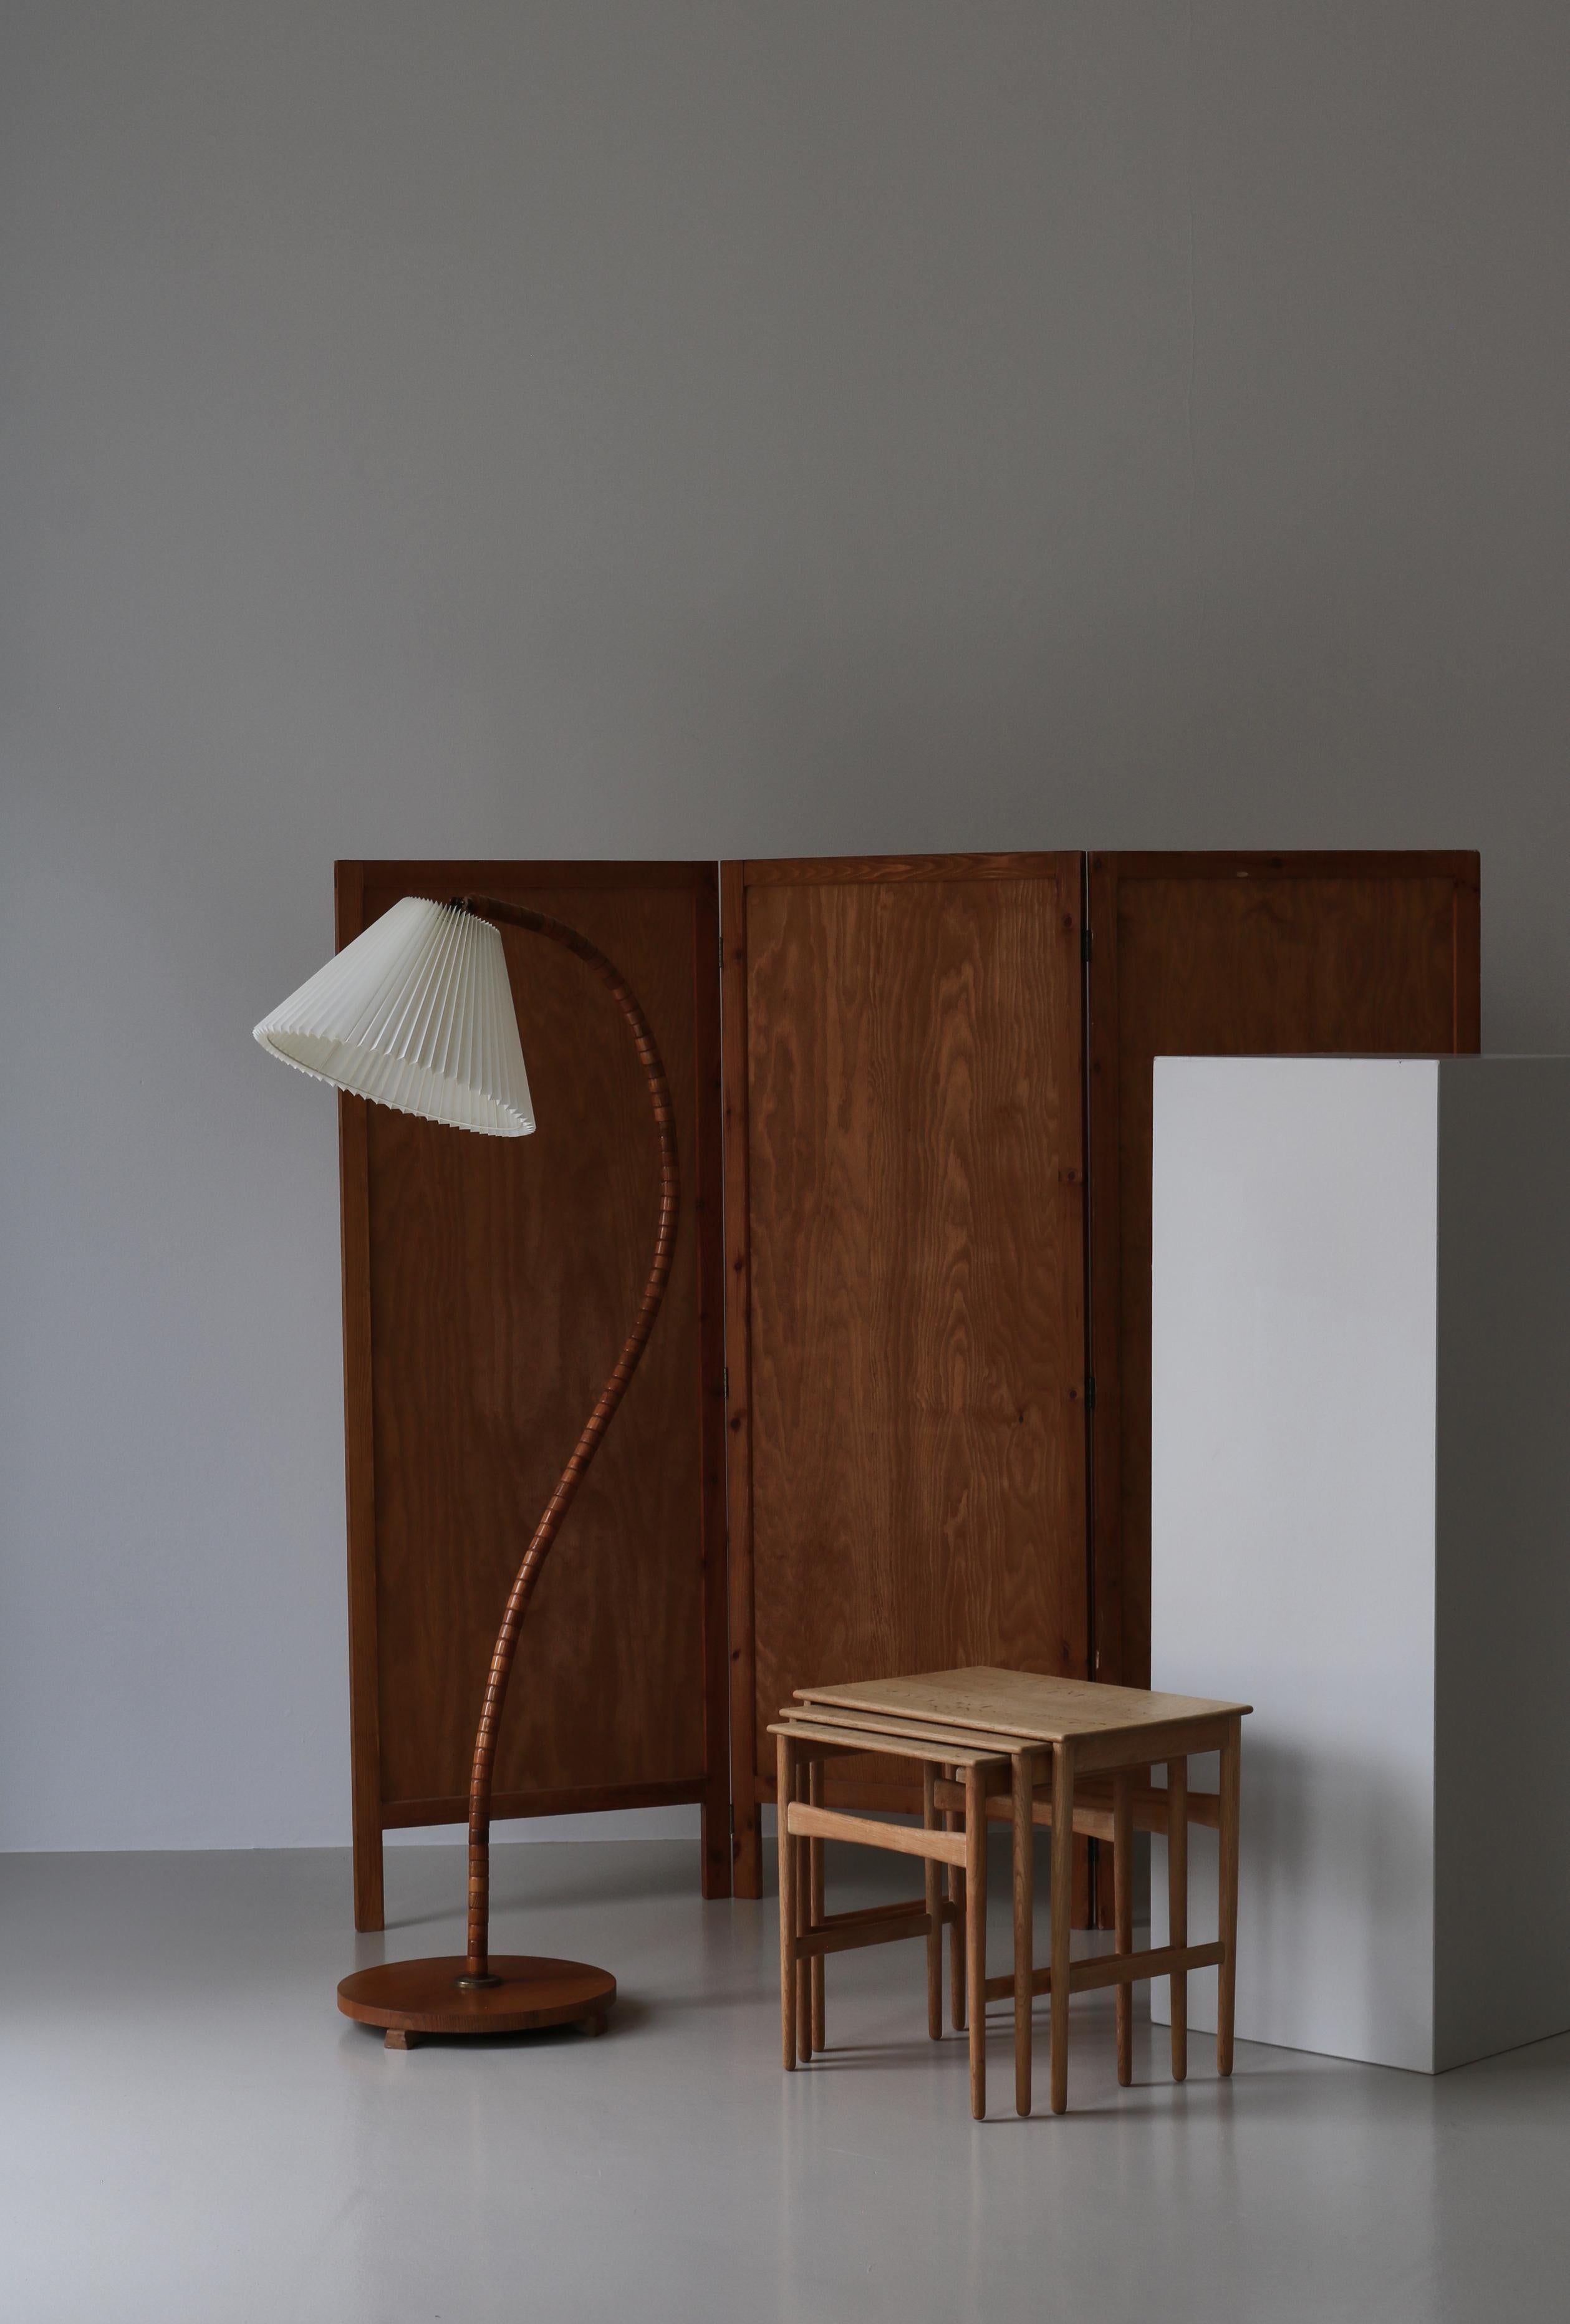 Magnifique design minimaliste du designer danois Hans J. Wegner en bois de chêne scandinave massif. Cet ensemble iconique de tables modèle AT-40 a été fabriqué dans les années 1960 chez l'ébéniste Andreas Tuck, à Odense, et est estampillé par le